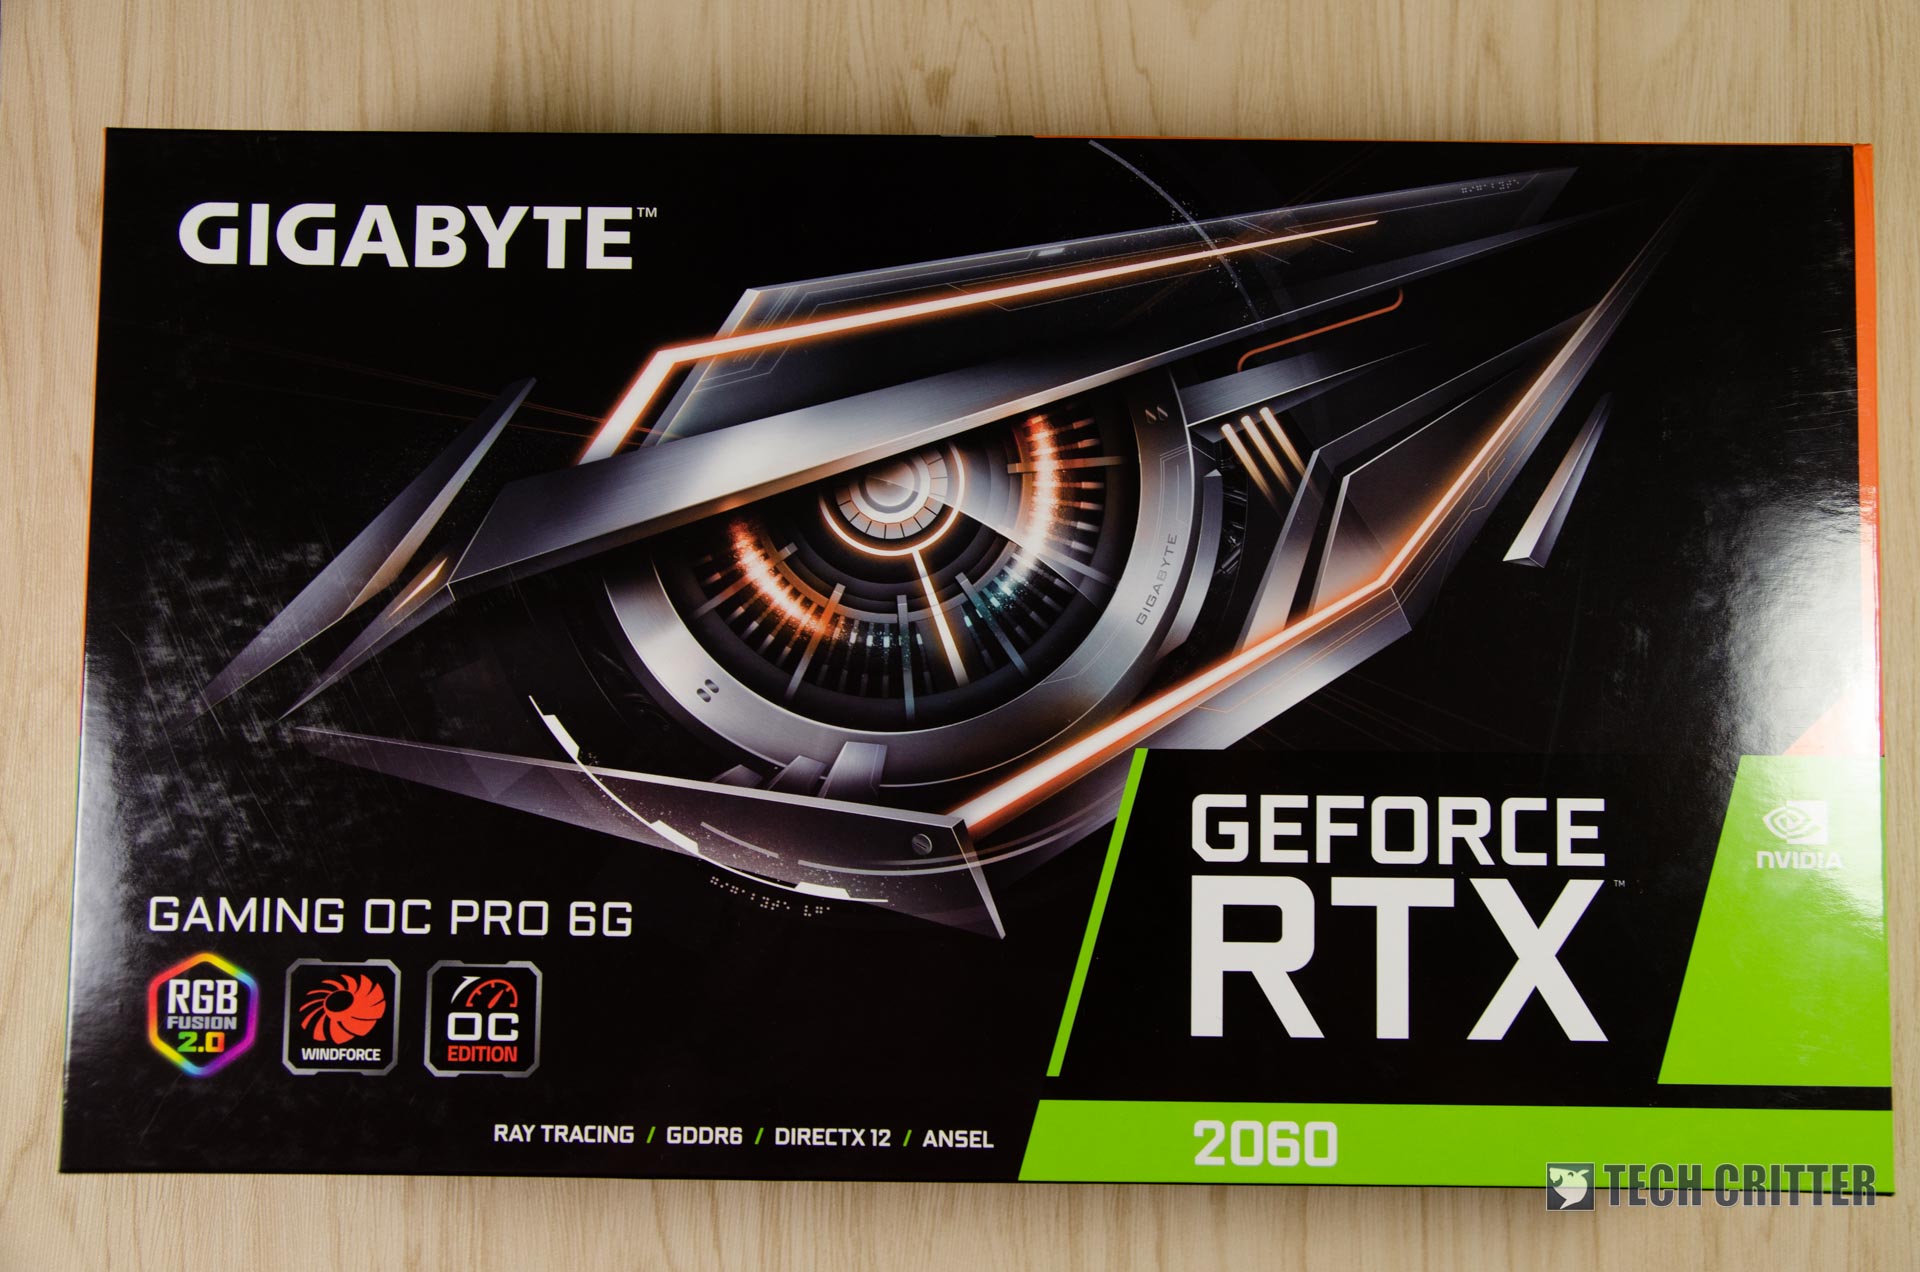 Gigabyte GeForce RTX 2060 Gaming OC Pro - 01